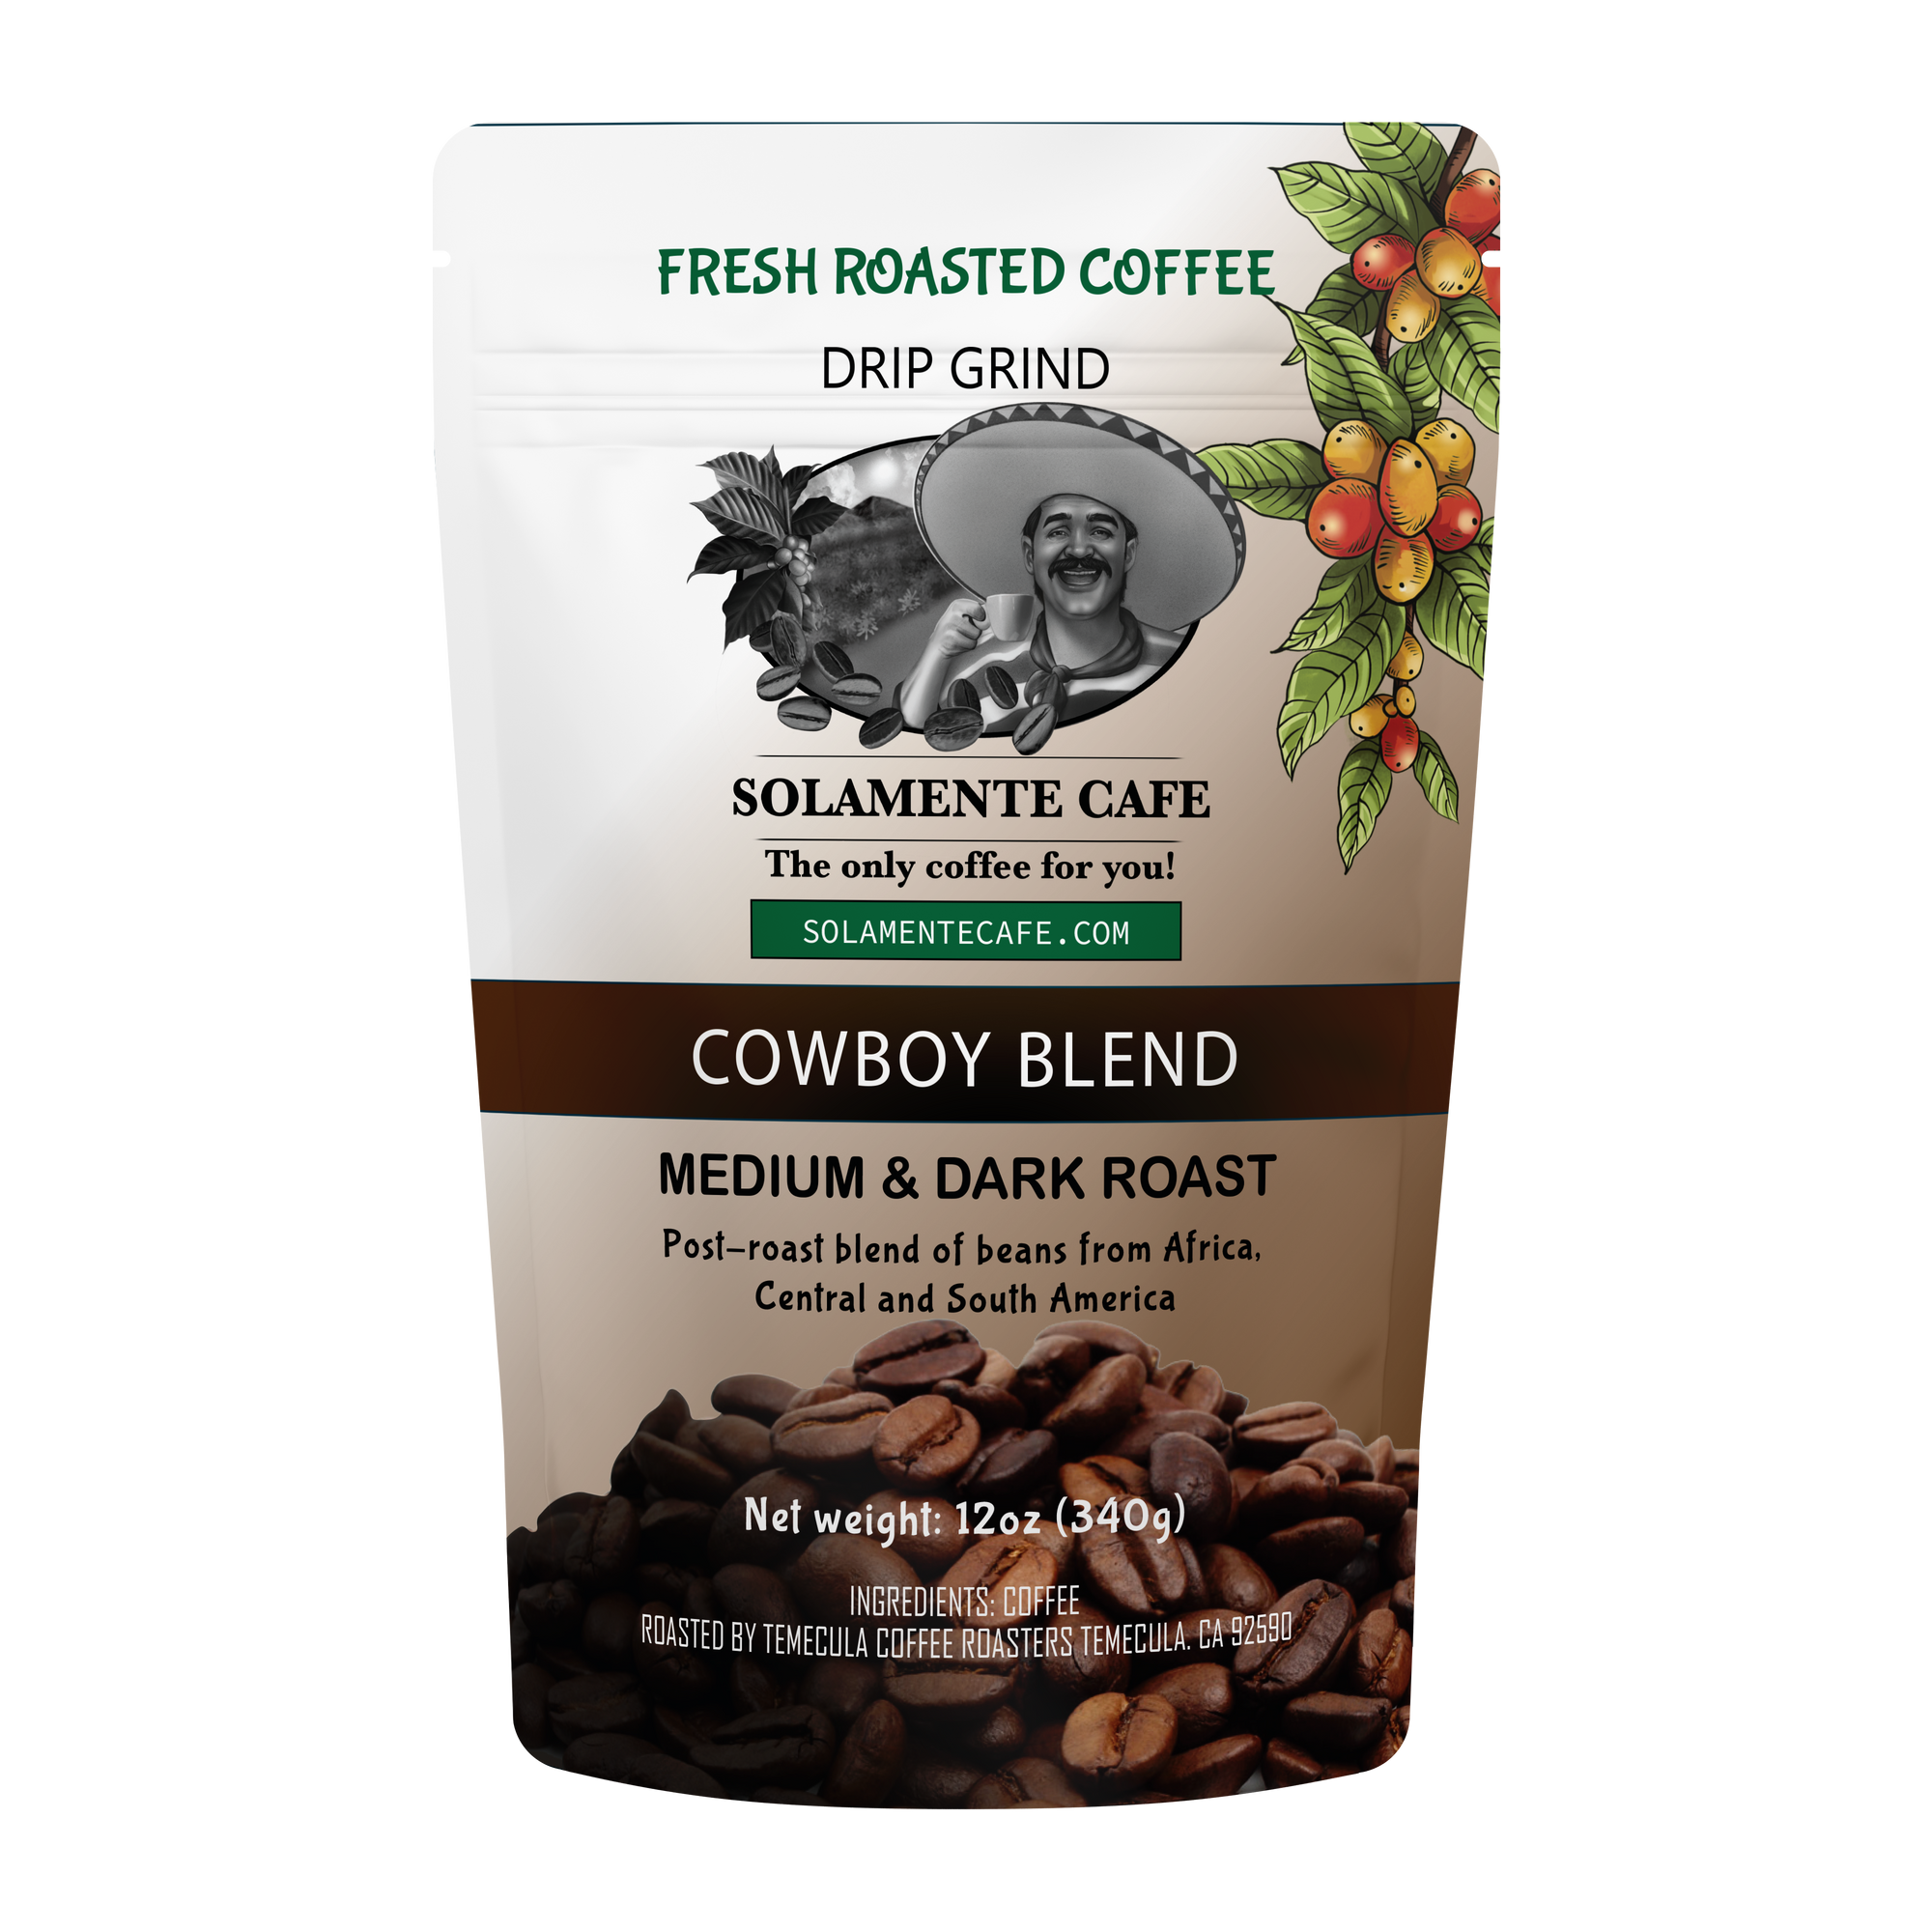 Cowboy Blend - Medium and Dark Roast - Solamente Cafe